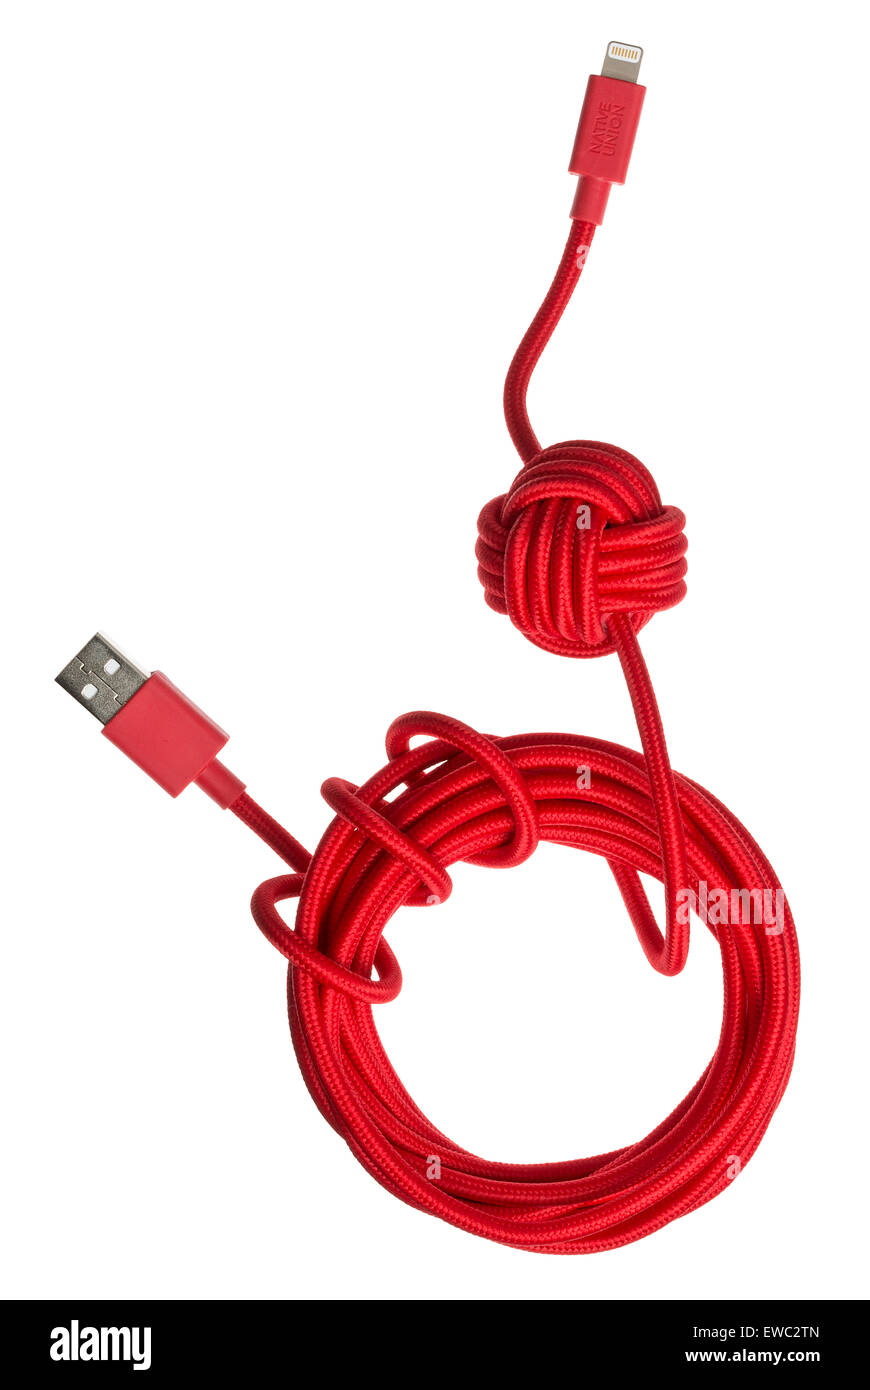 Union Native nuit câble. Câble USB de recharge Thunderbolt avec noeud pondérée pour garder ancré sur une surface plane. Banque D'Images